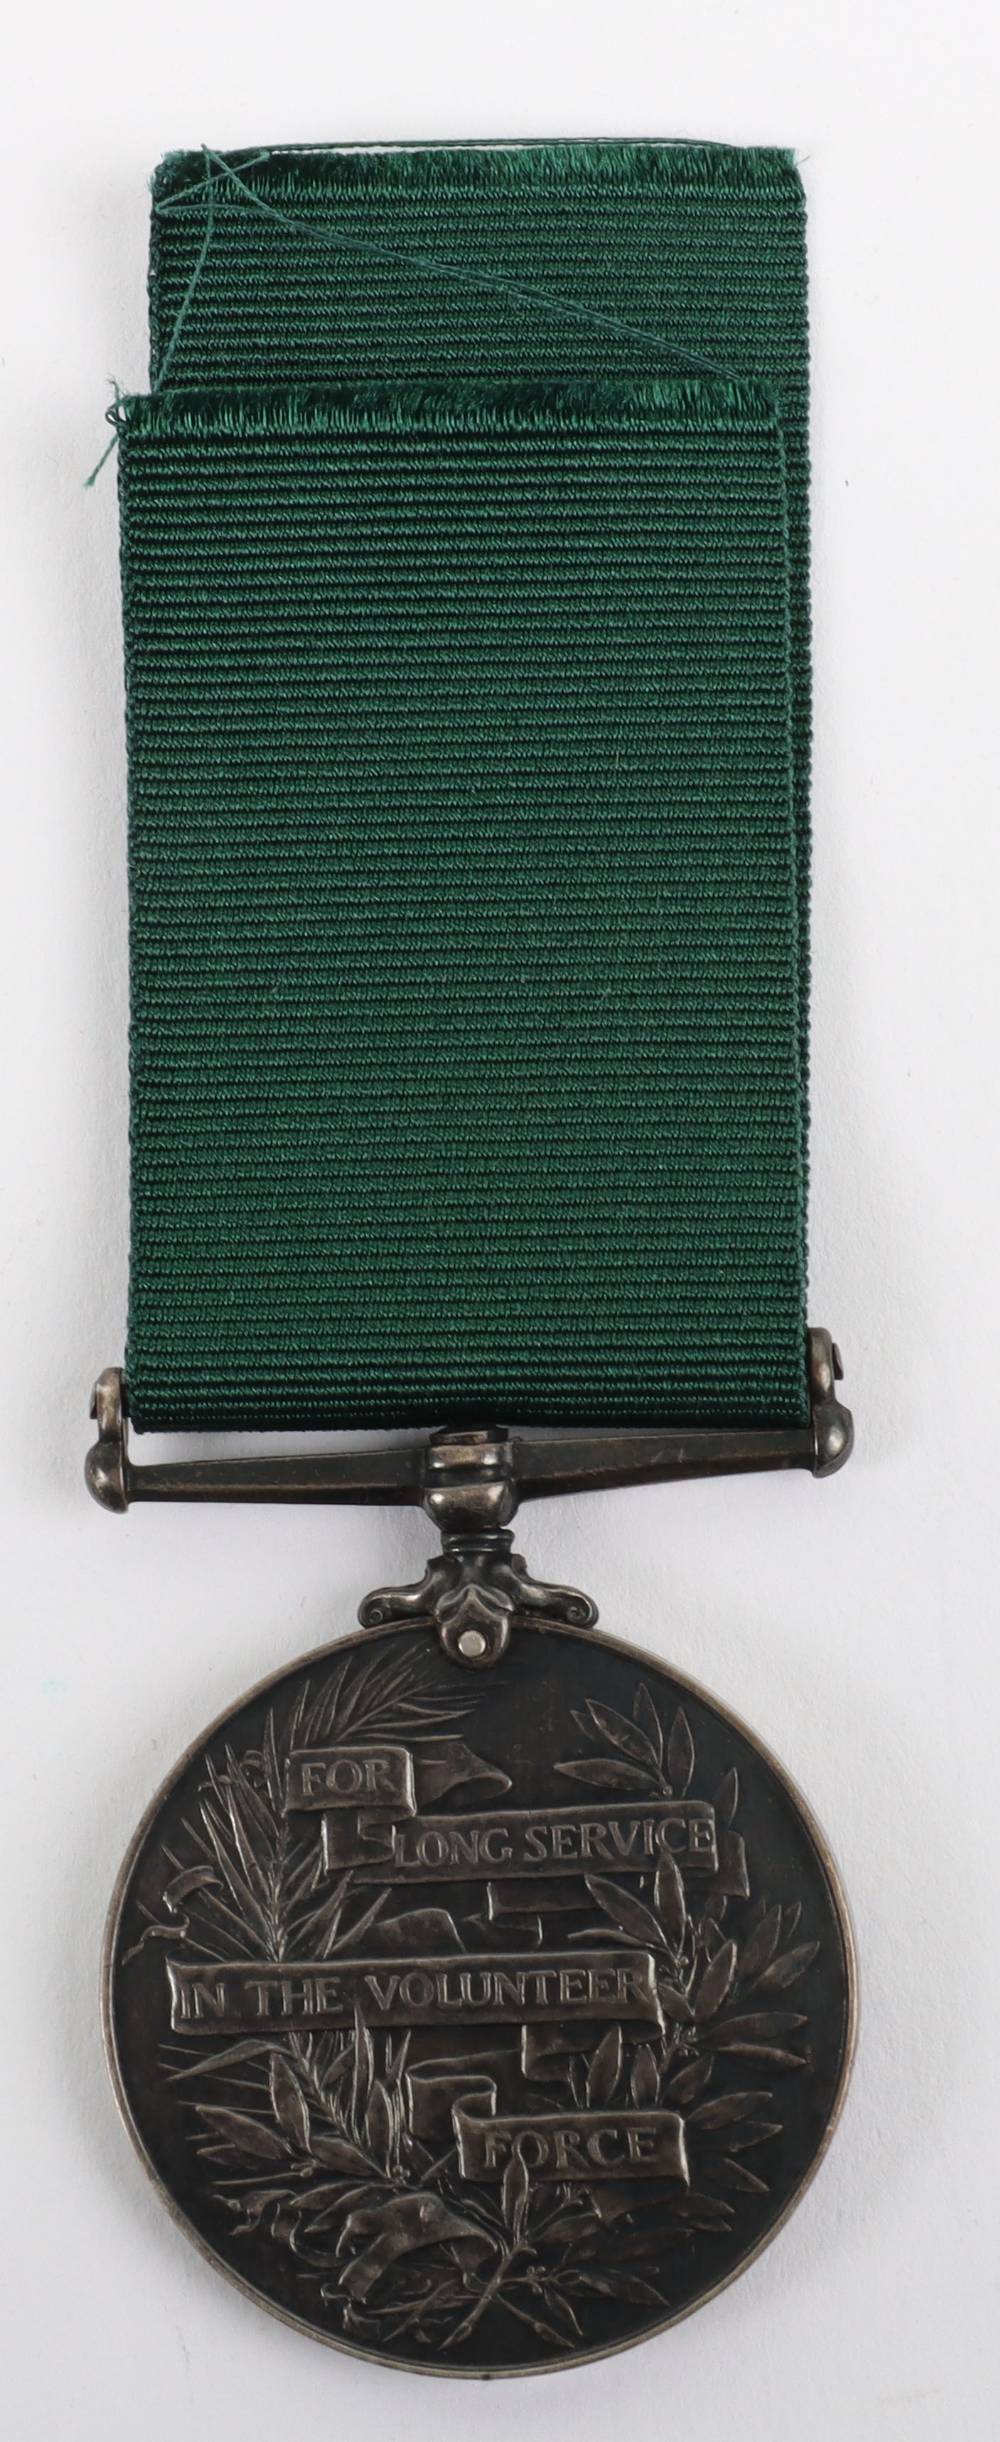 Edward VII Volunteer Force Long Service Medal 4th Volunteer Battalion Durham Light Infantry - Image 2 of 3